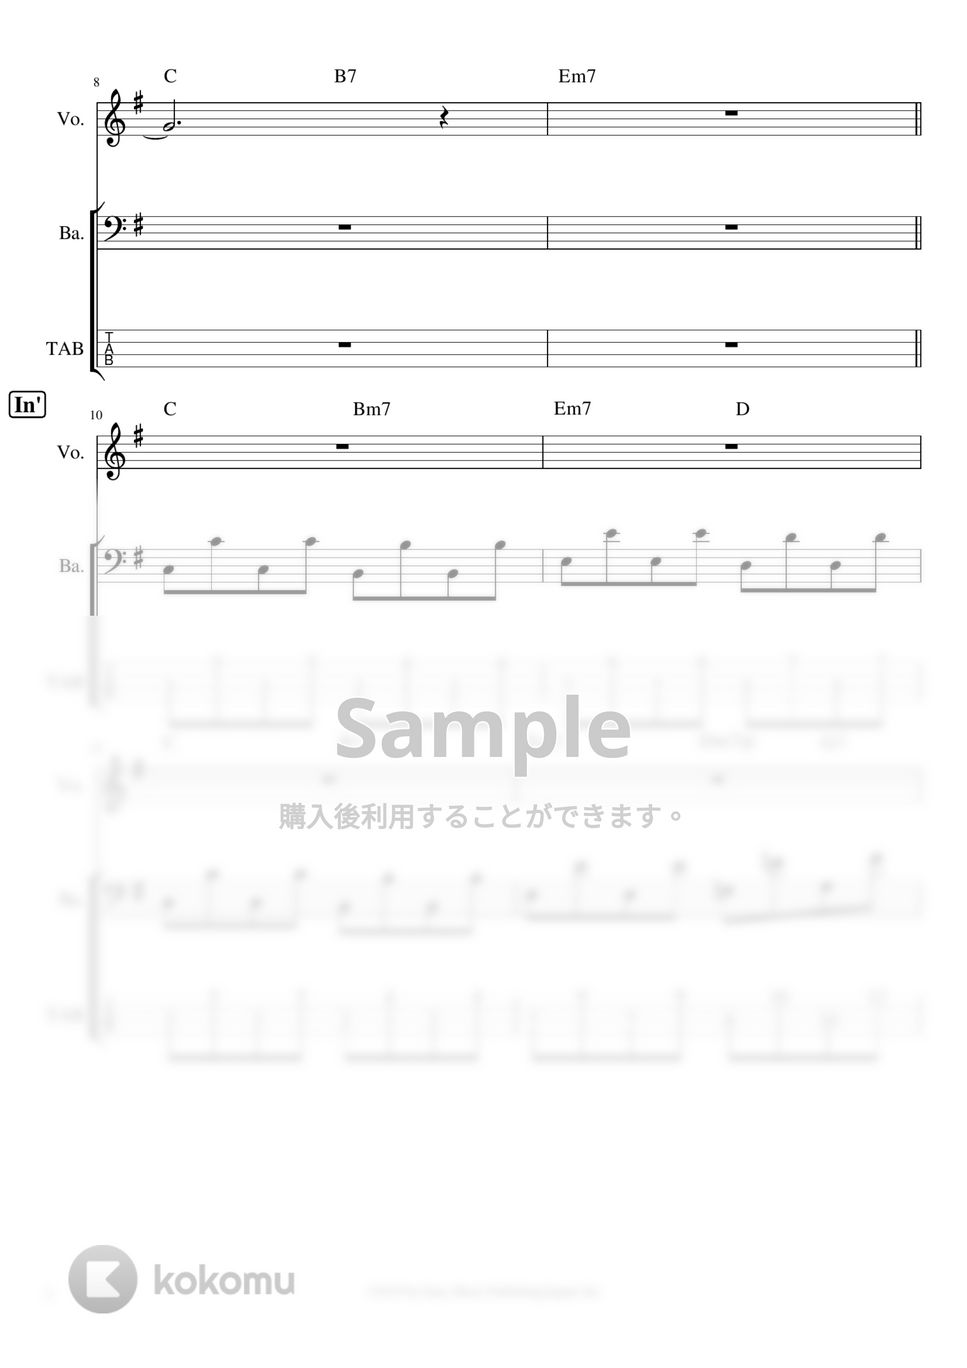 YOASOBI - ※Sample 夜に駆ける ベースタブ譜※男声アレンジ (男声キーに編曲したベースタブ譜です。) by ましまし